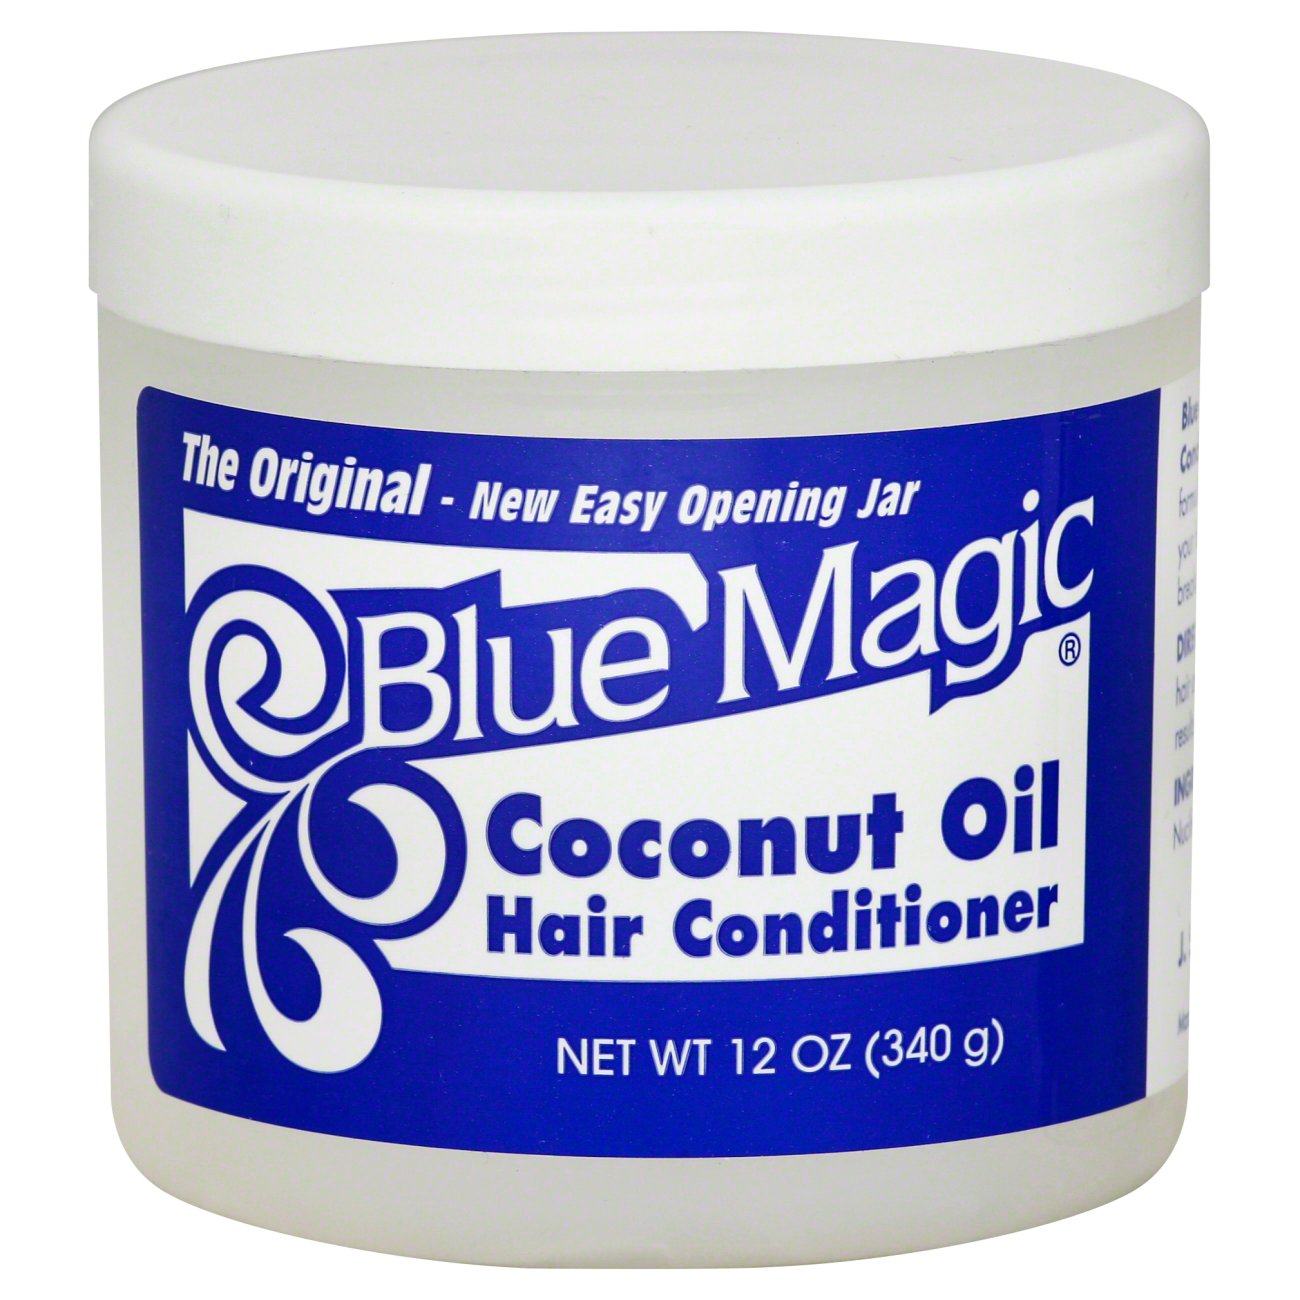 Blue Magic Coconut Oil Hair Conditioner - Shop Hair Care at H-E-B